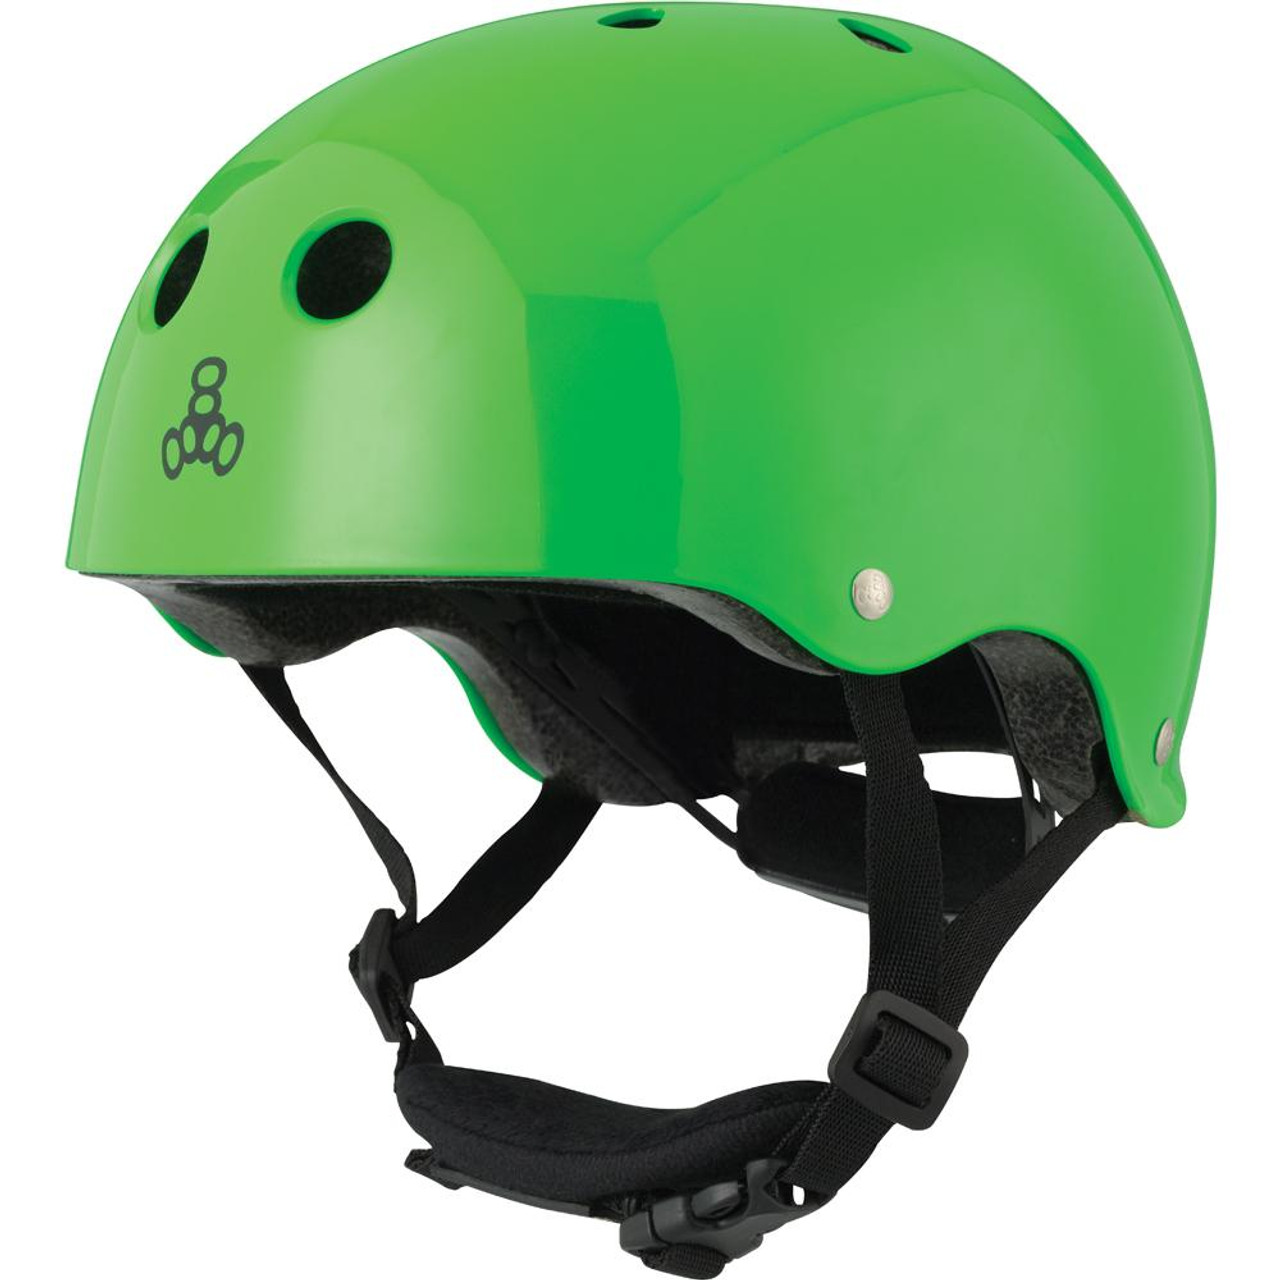 DAYONG Kids Bike Helmet Set,Adjustable Skateboard Helmet with Knee